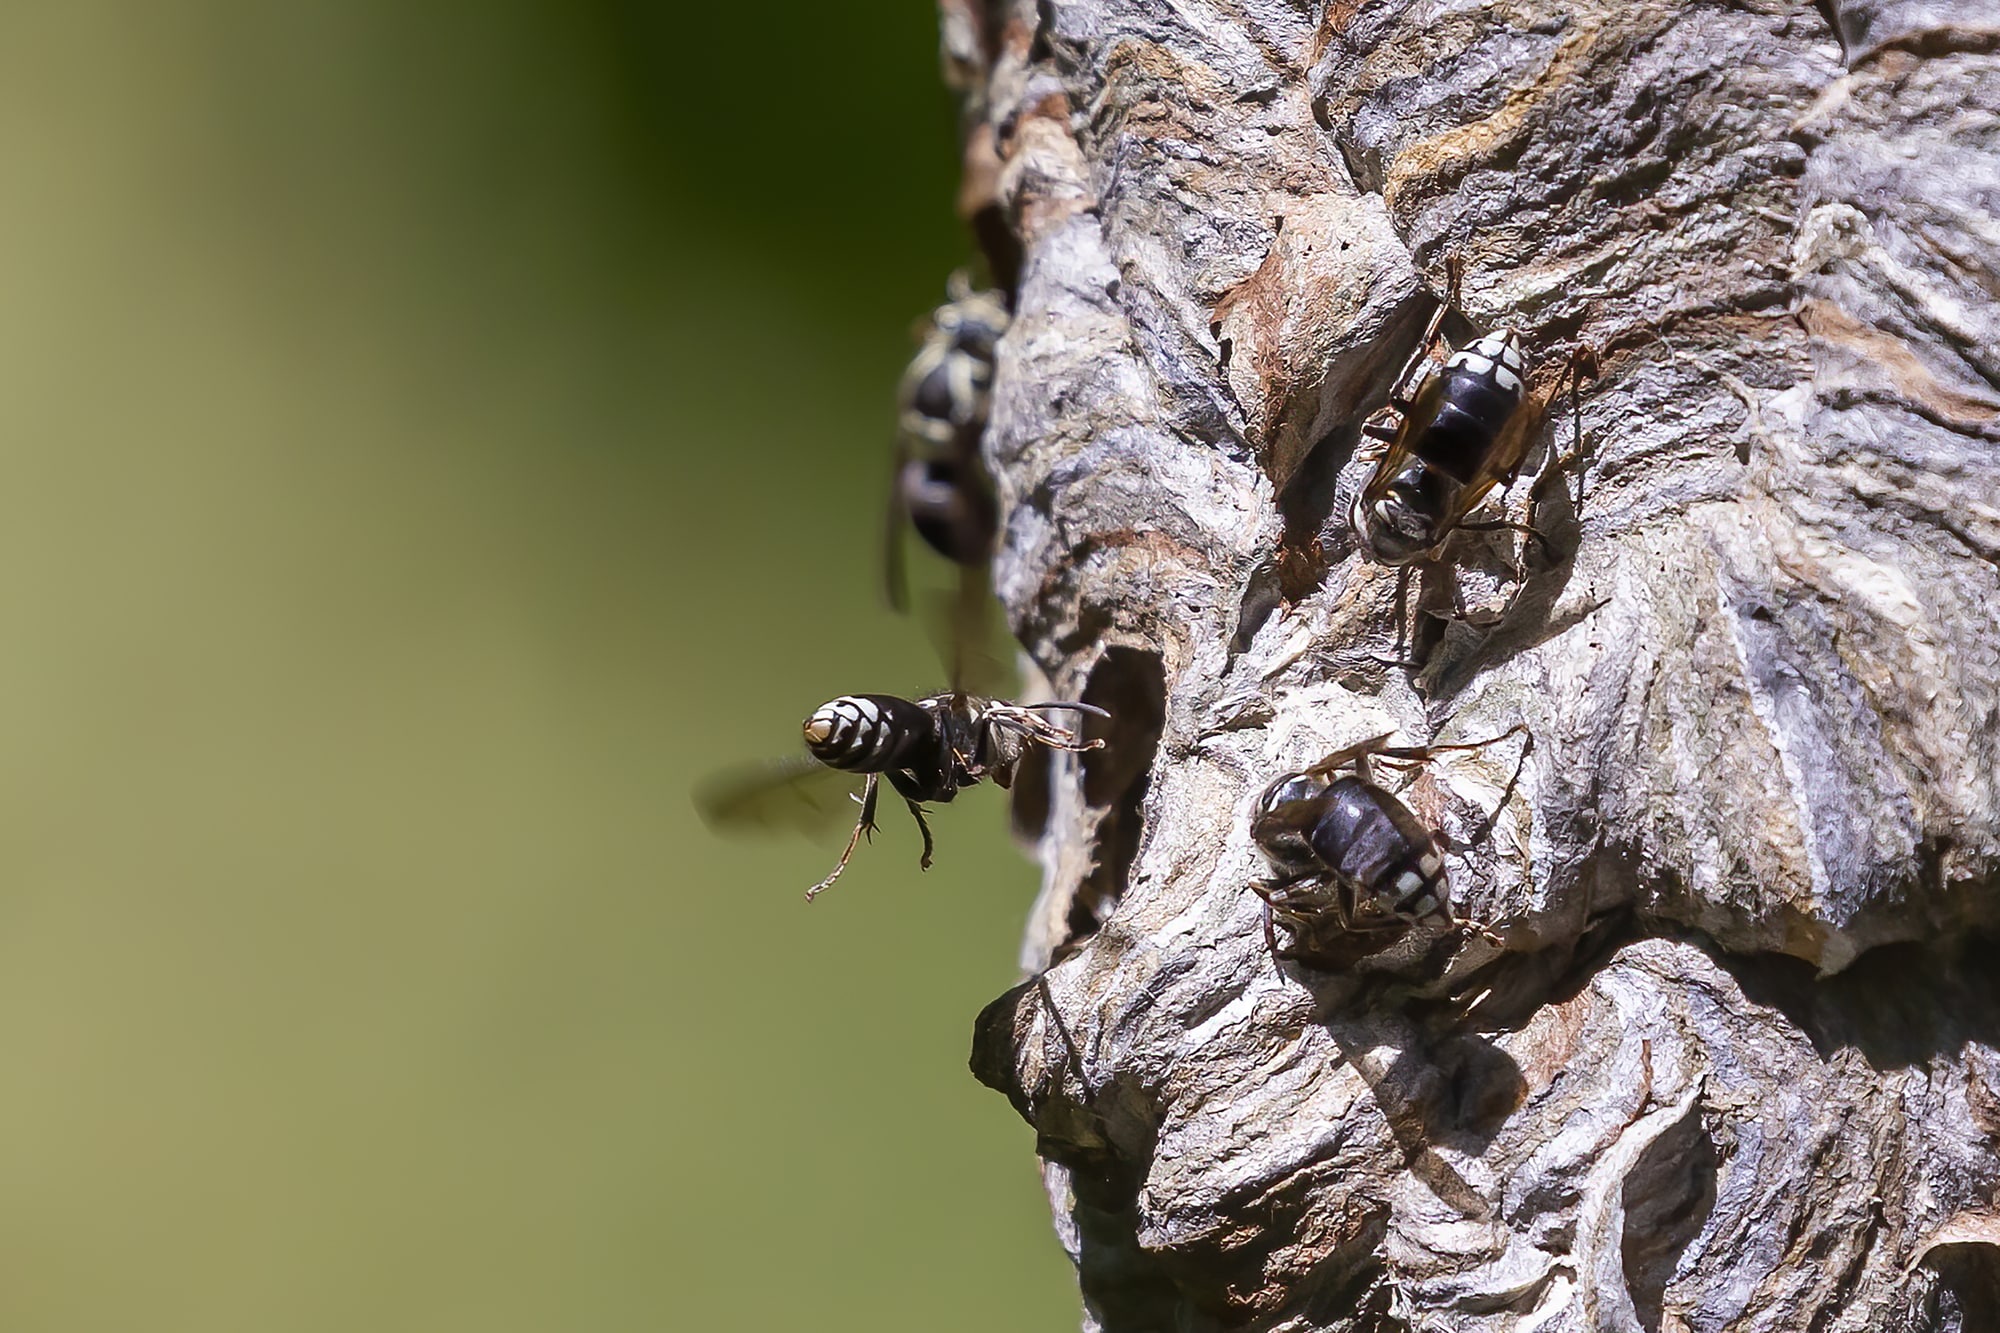 bald face hornets on their nest